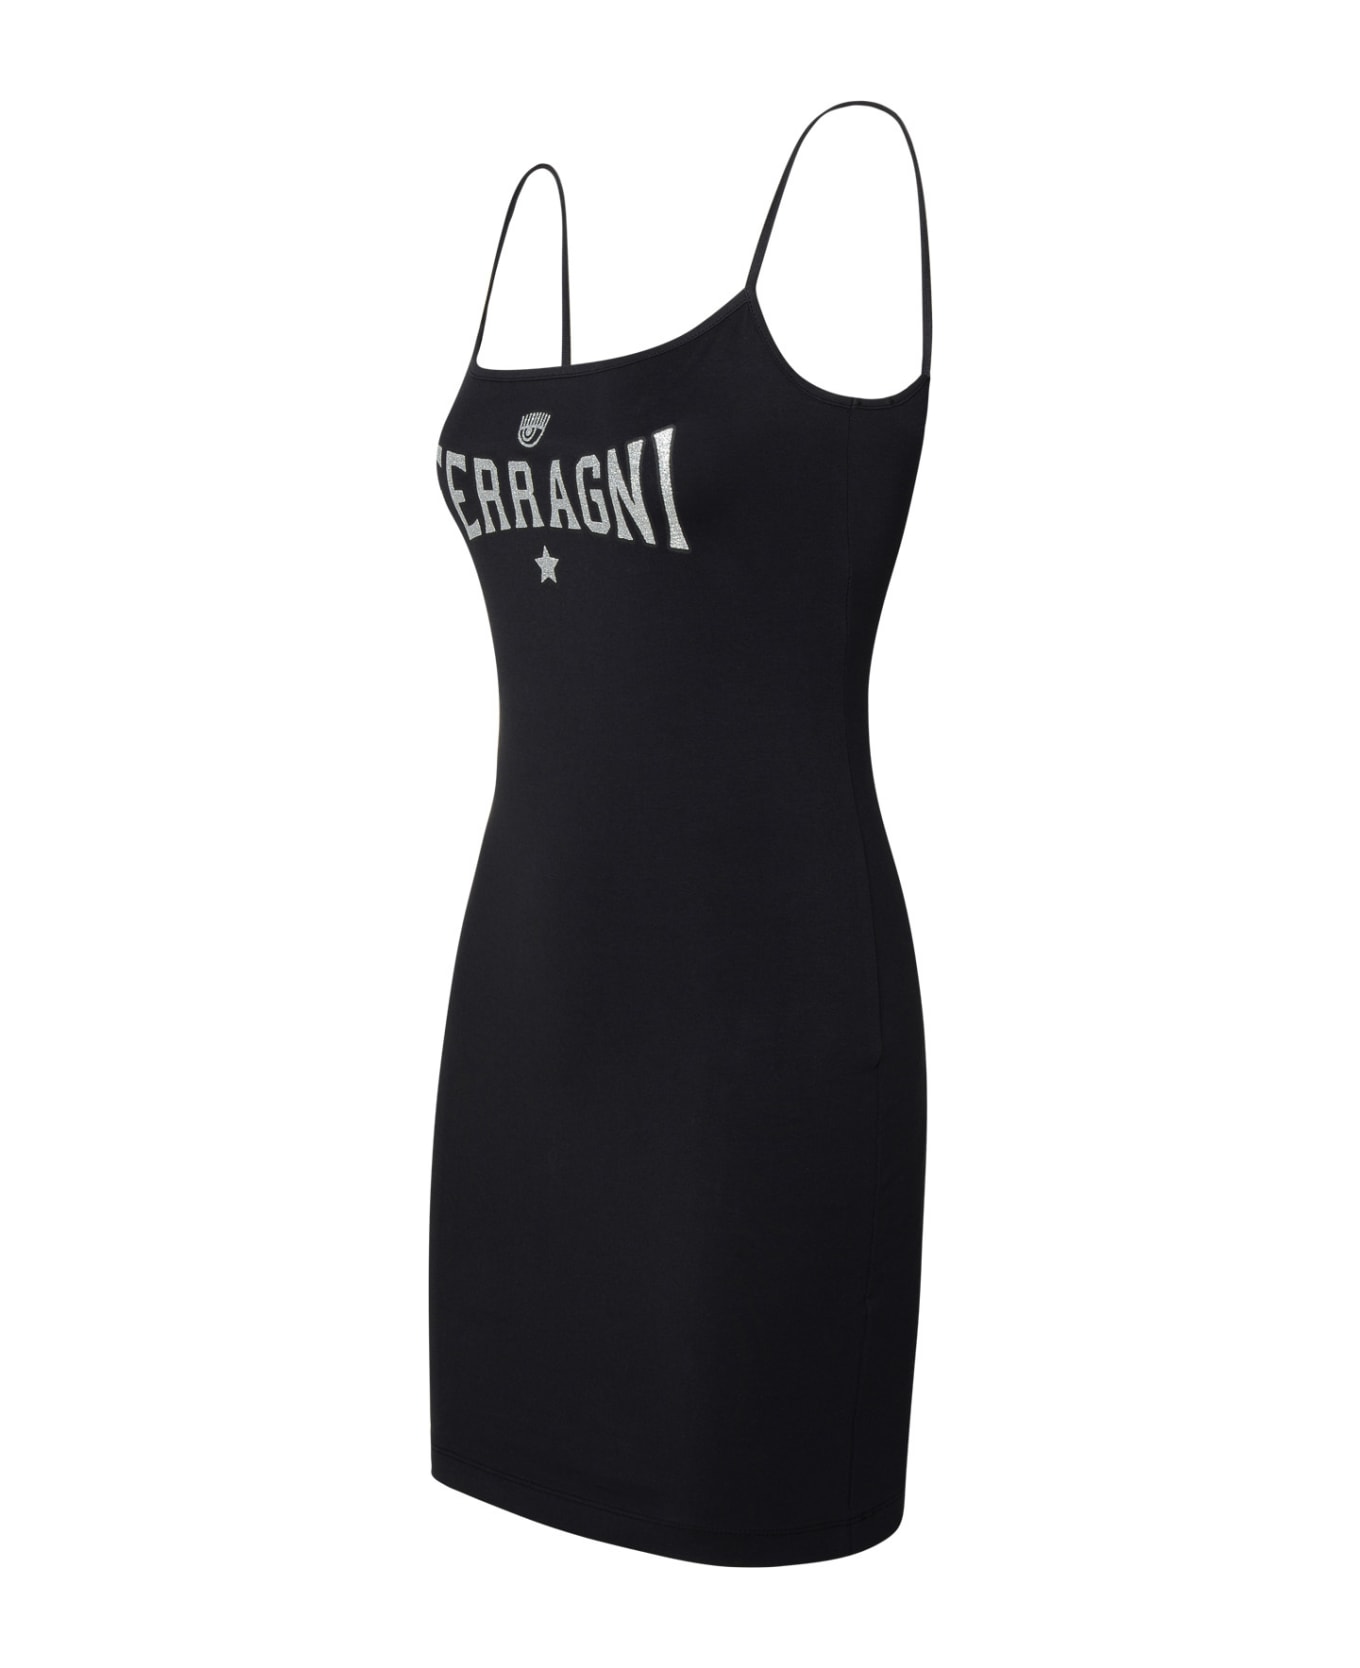 Chiara Ferragni Black Cotton Blend Dress - Black